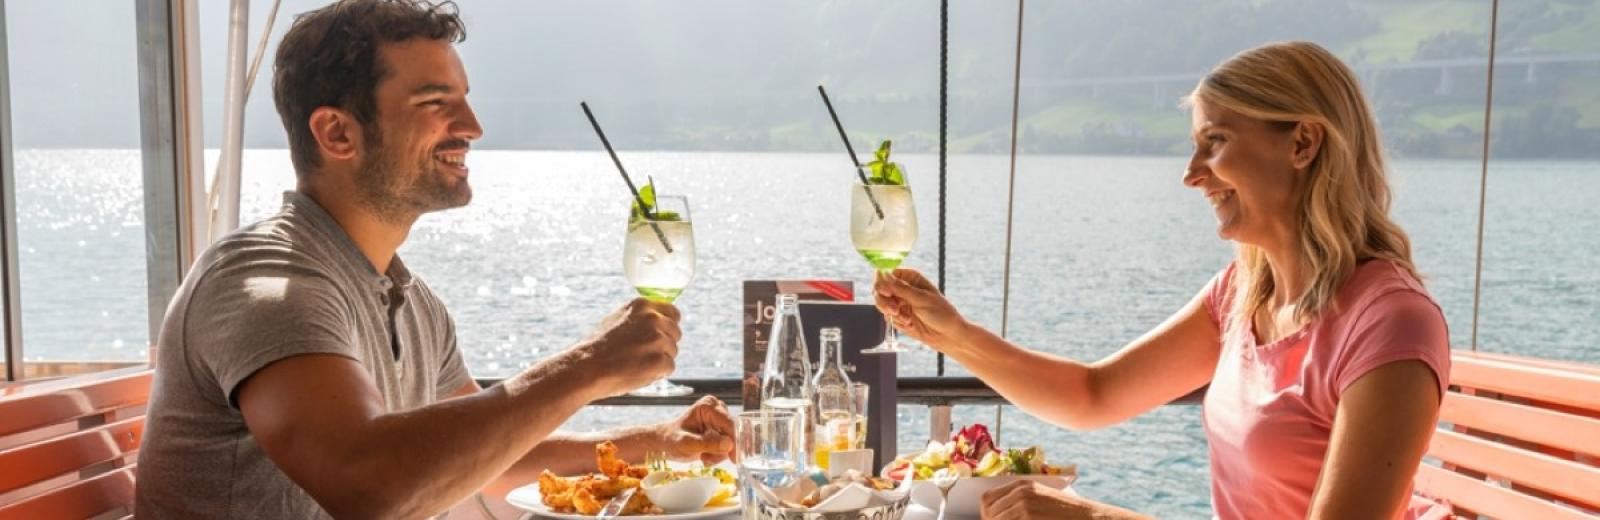 Un couple profite d’un bon repas à bord d’un bateau à vapeur, lac des Quatre-Cantons, Suisse centrale © Swiss Travel System SA, 2019, Photographe: Daniel Ammann.